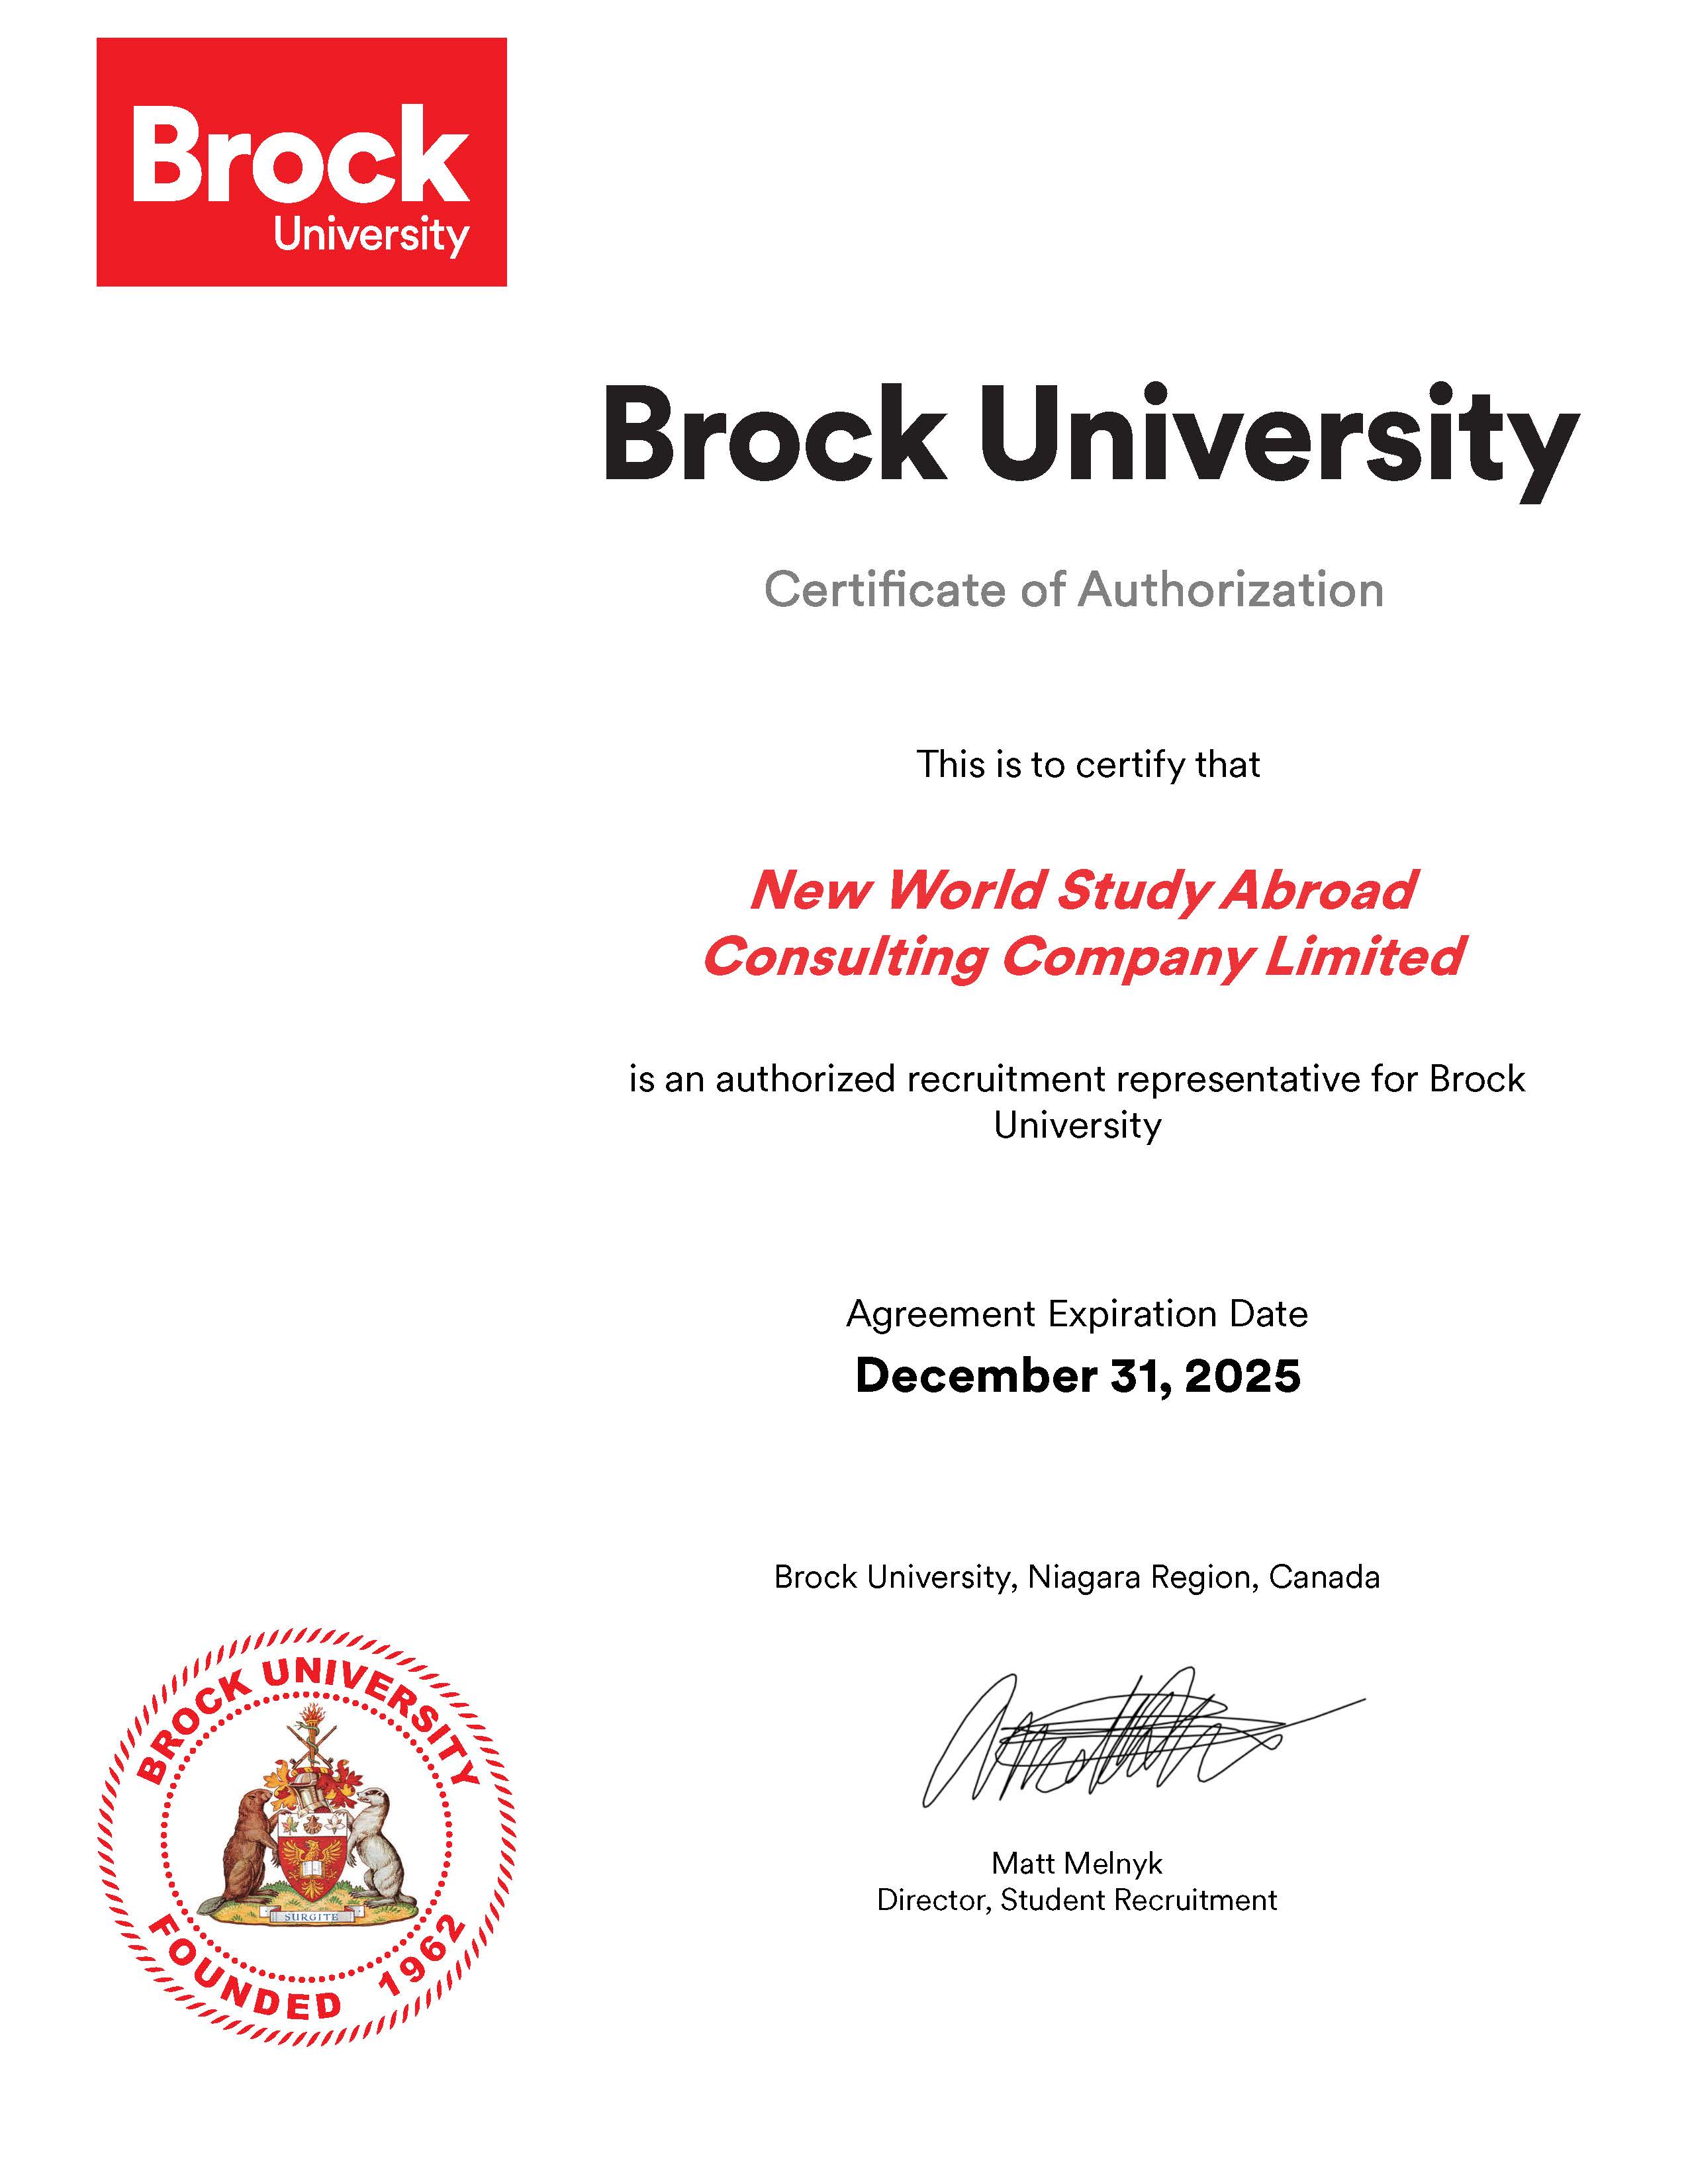 Brock University, Ontario, Canada